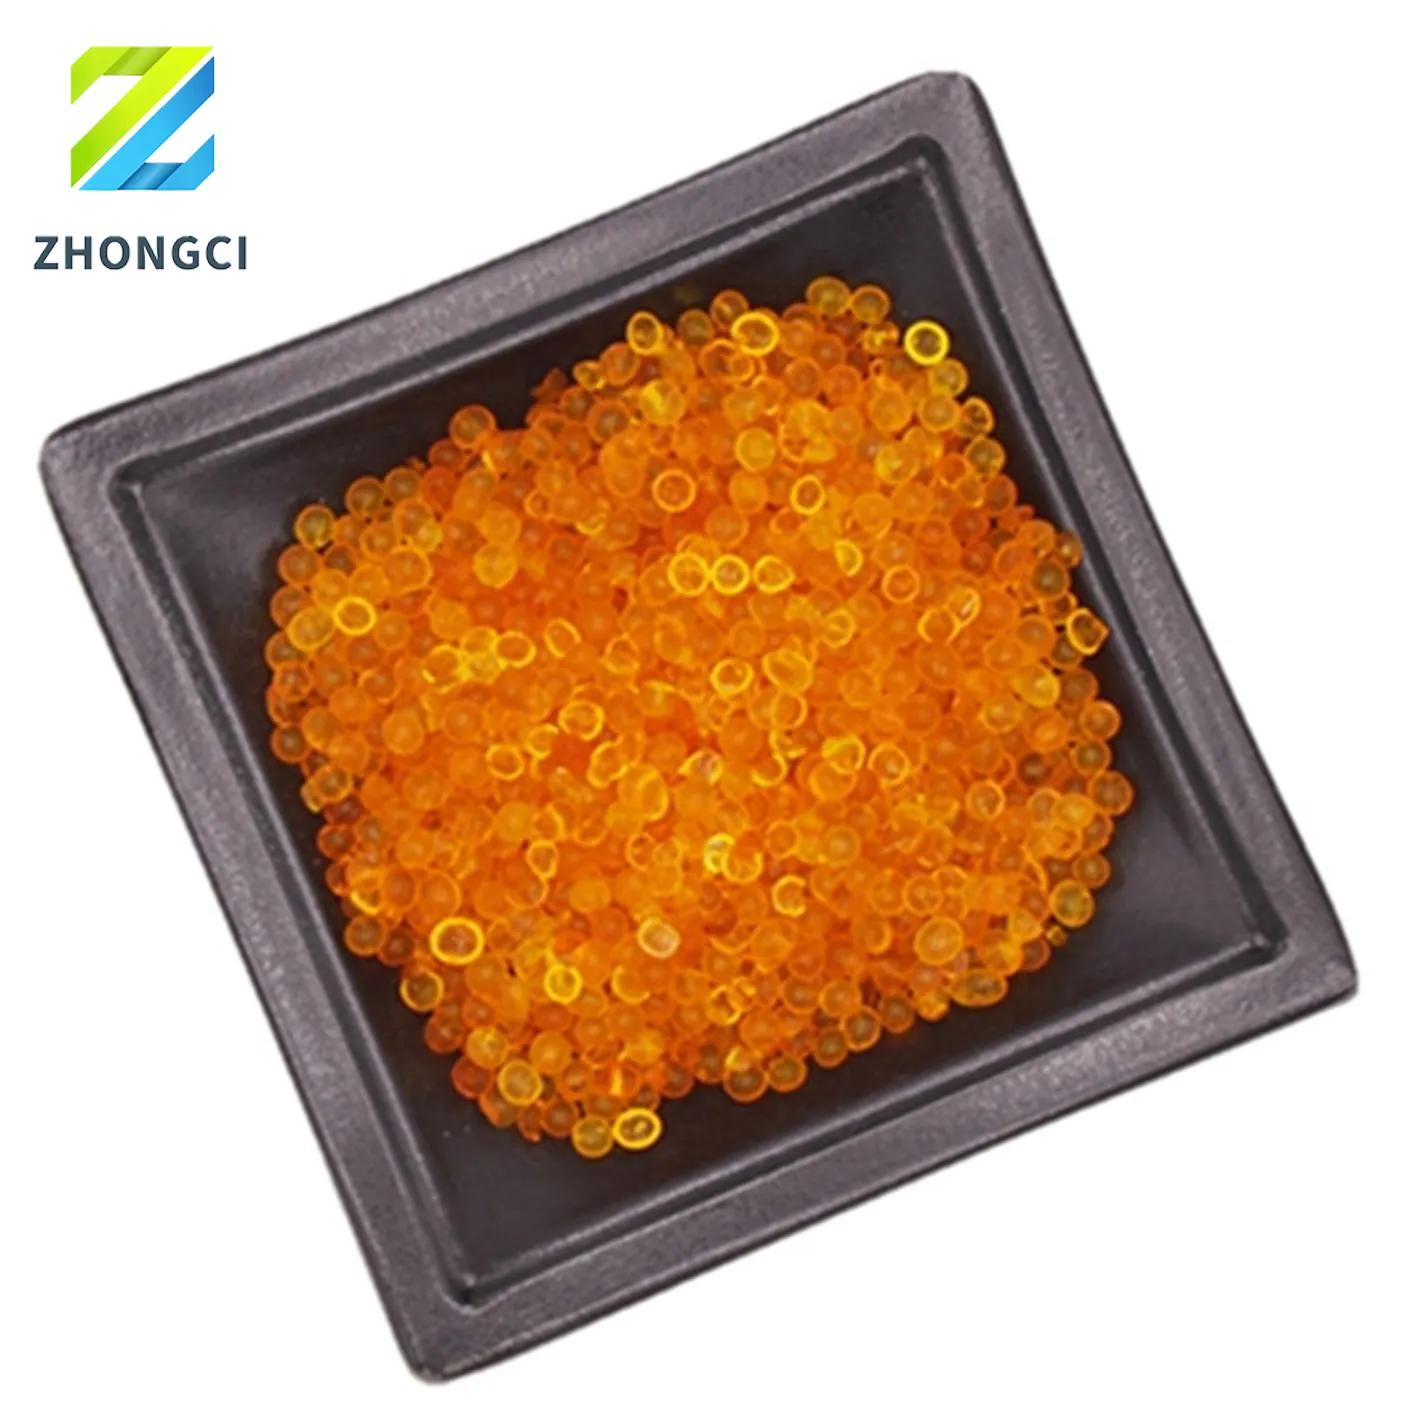 Zhongci gel de silice type A indicateur de couleur orange déshydratant 2-5mm absorbant l'humidité gel de silice industriel blanc bleu orange